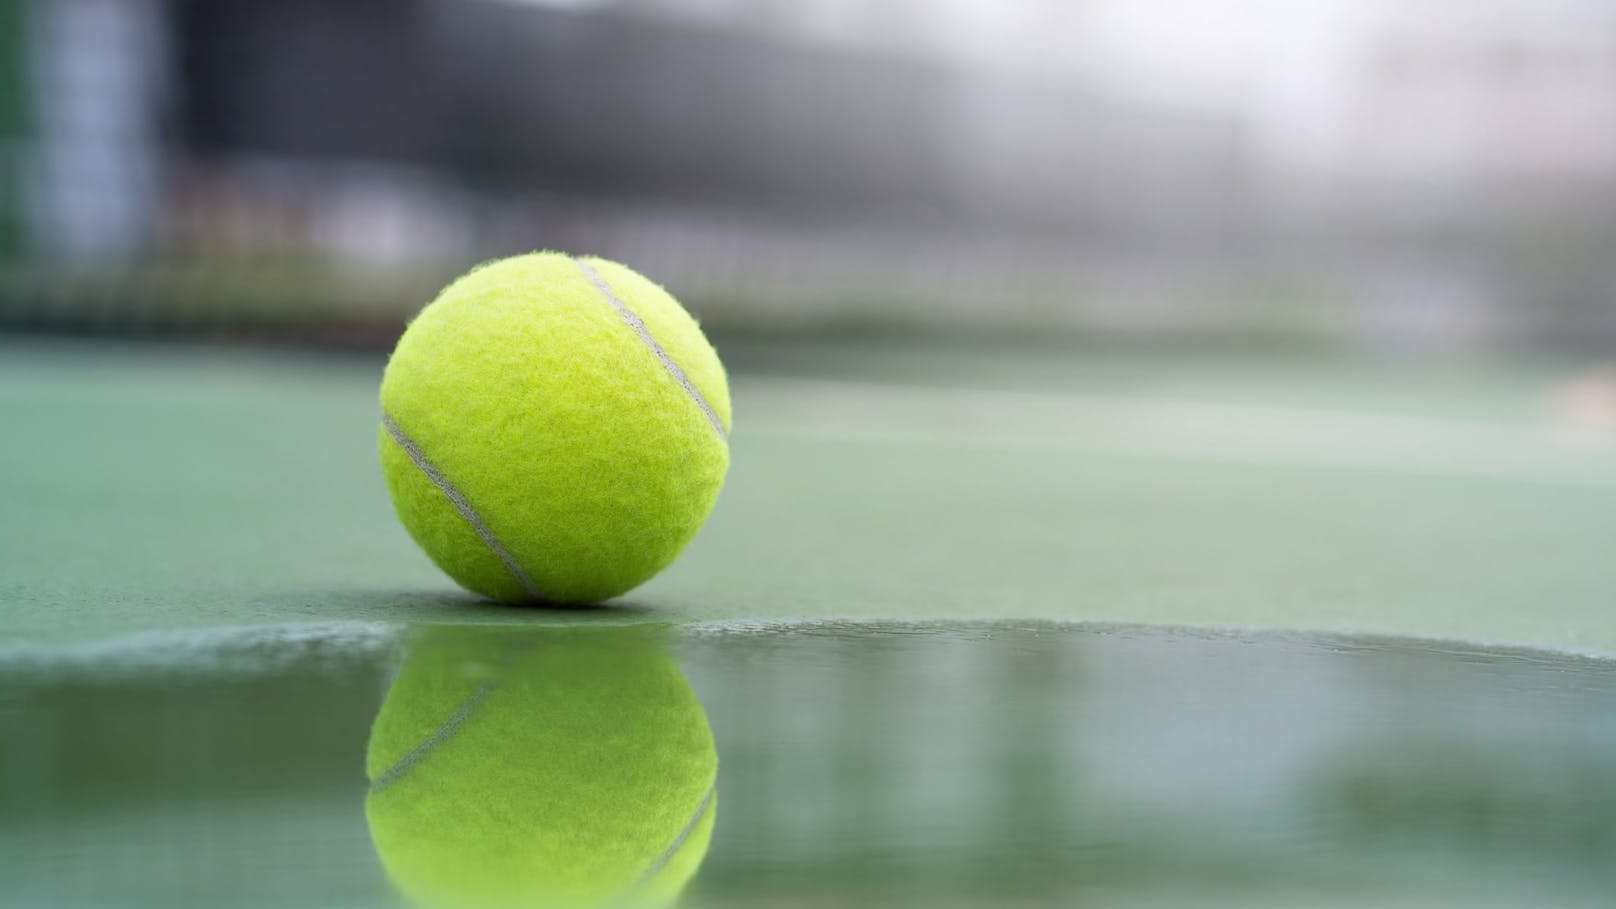 Deshalb kann ein Tennisball im Garten Leben retten